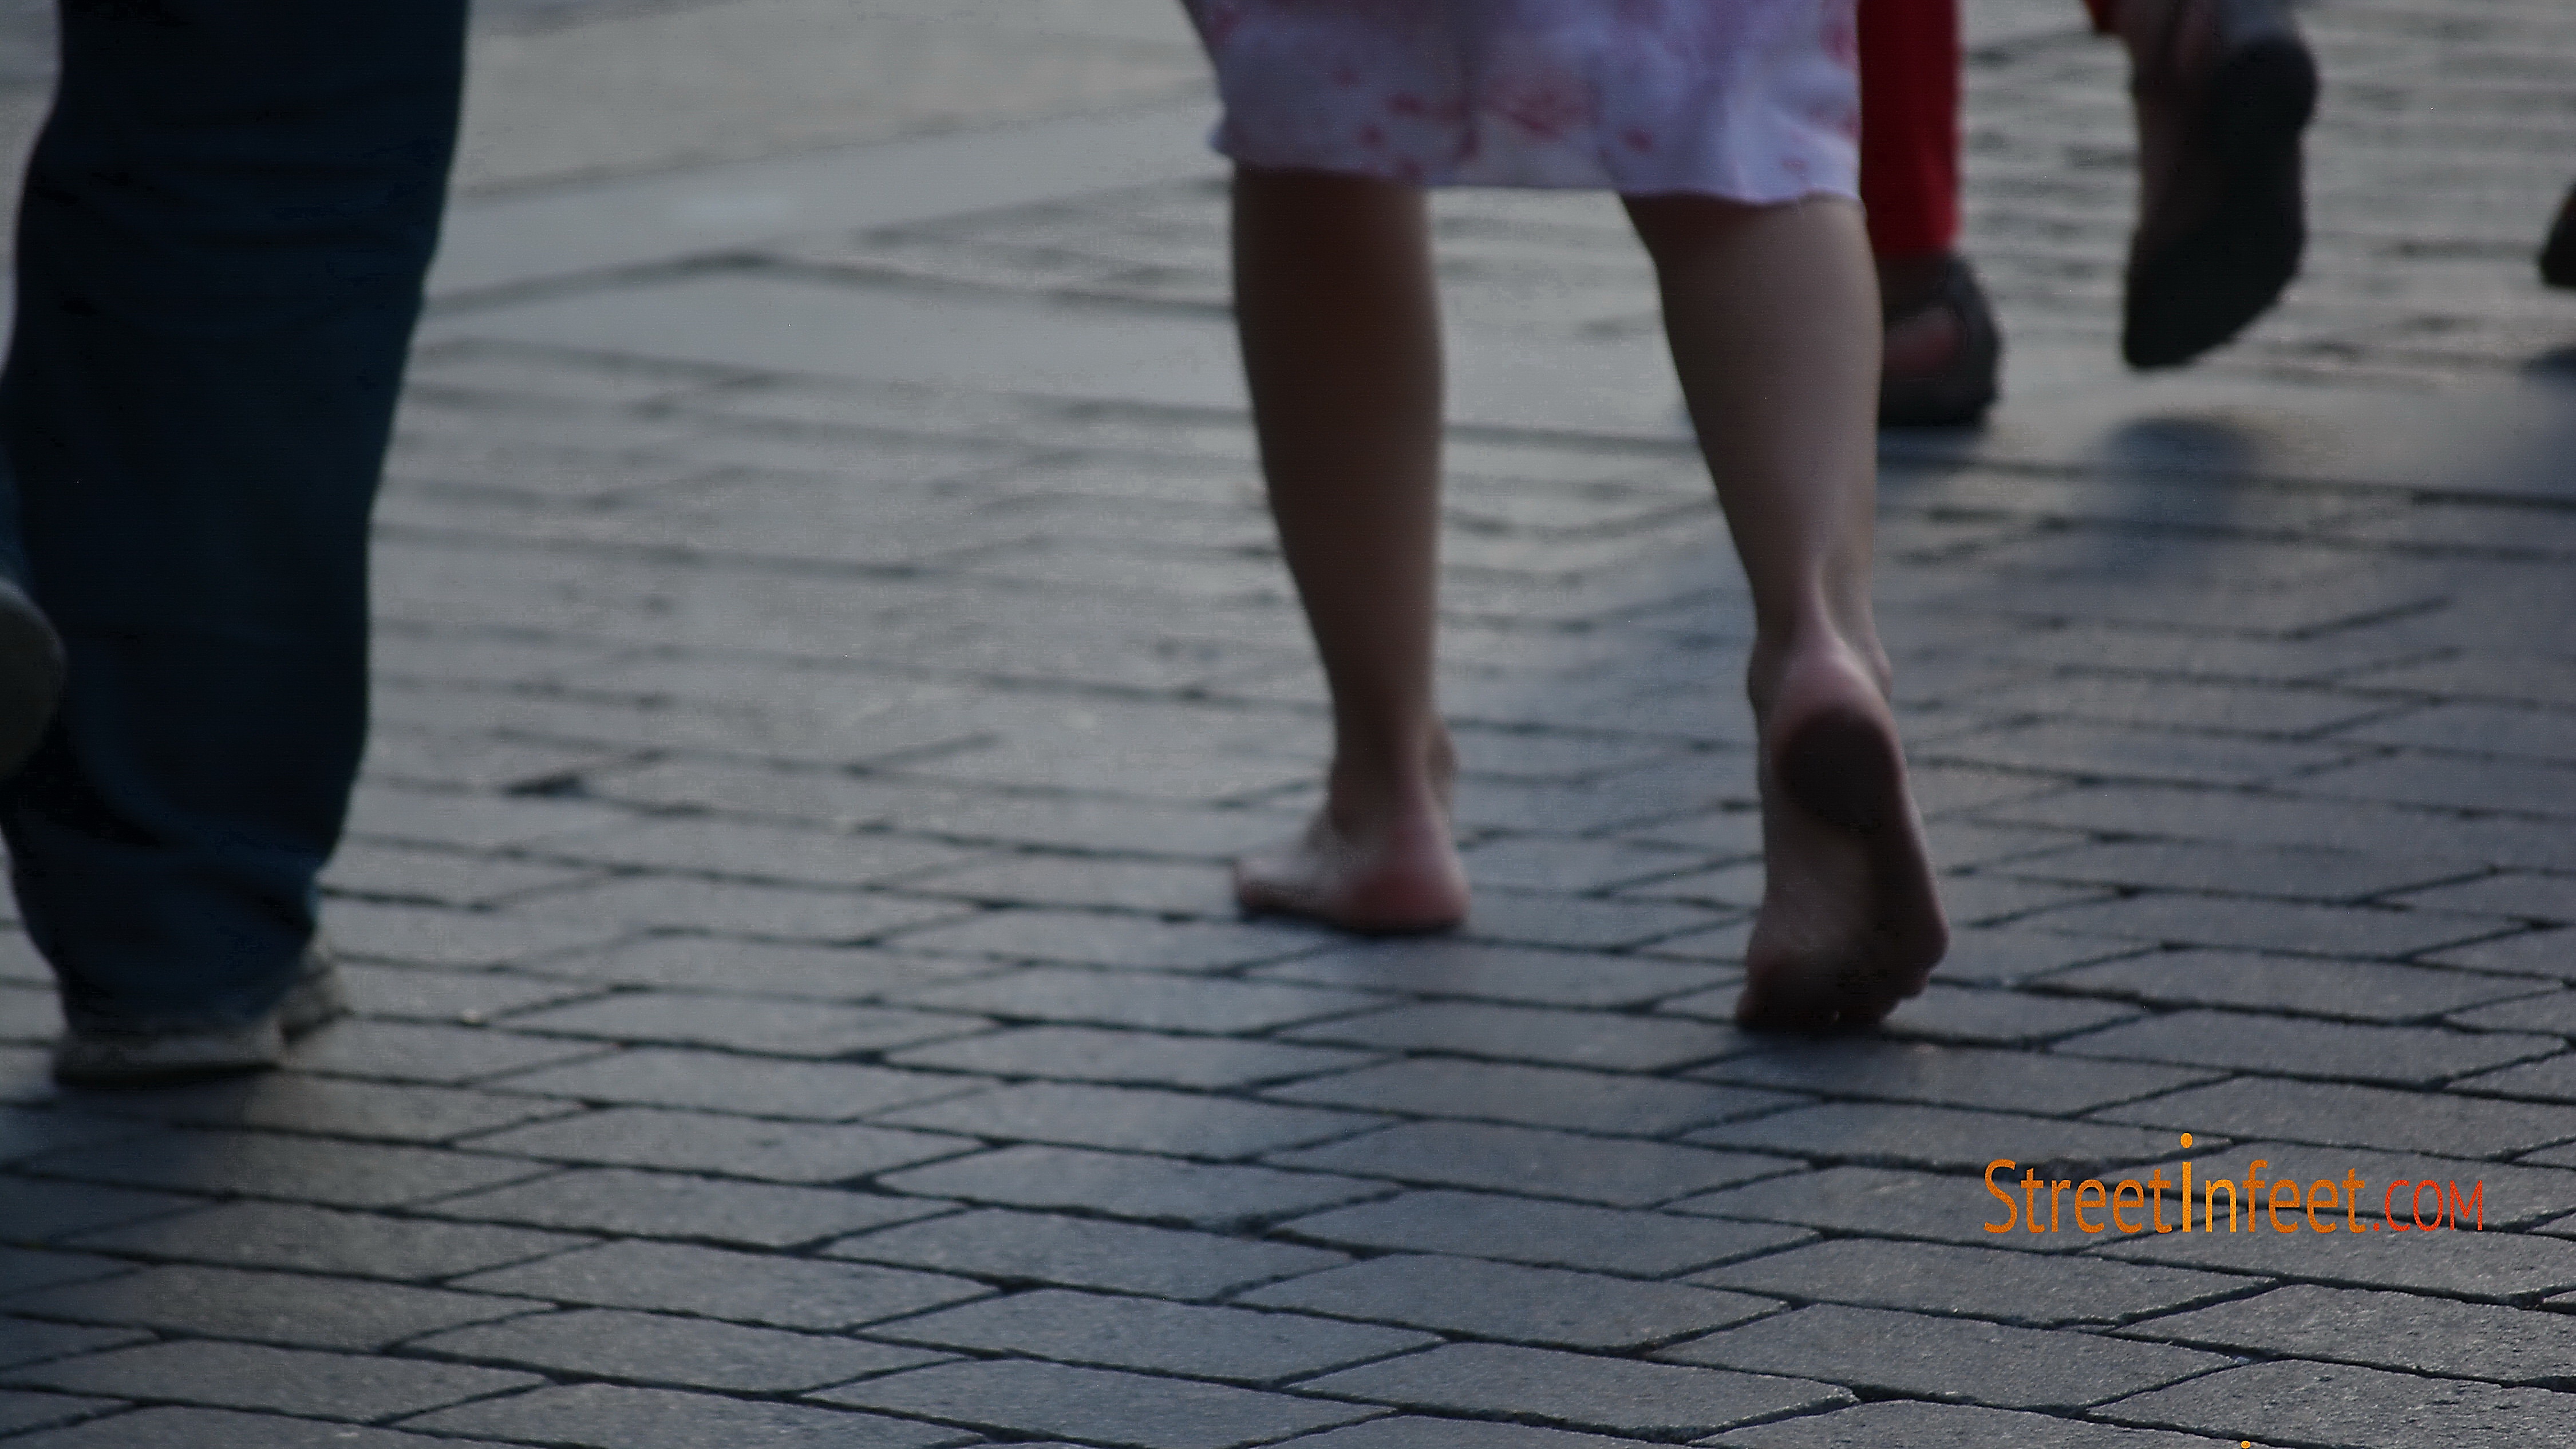 Barefoot girl walking barefoot in public by gomerfordin on 